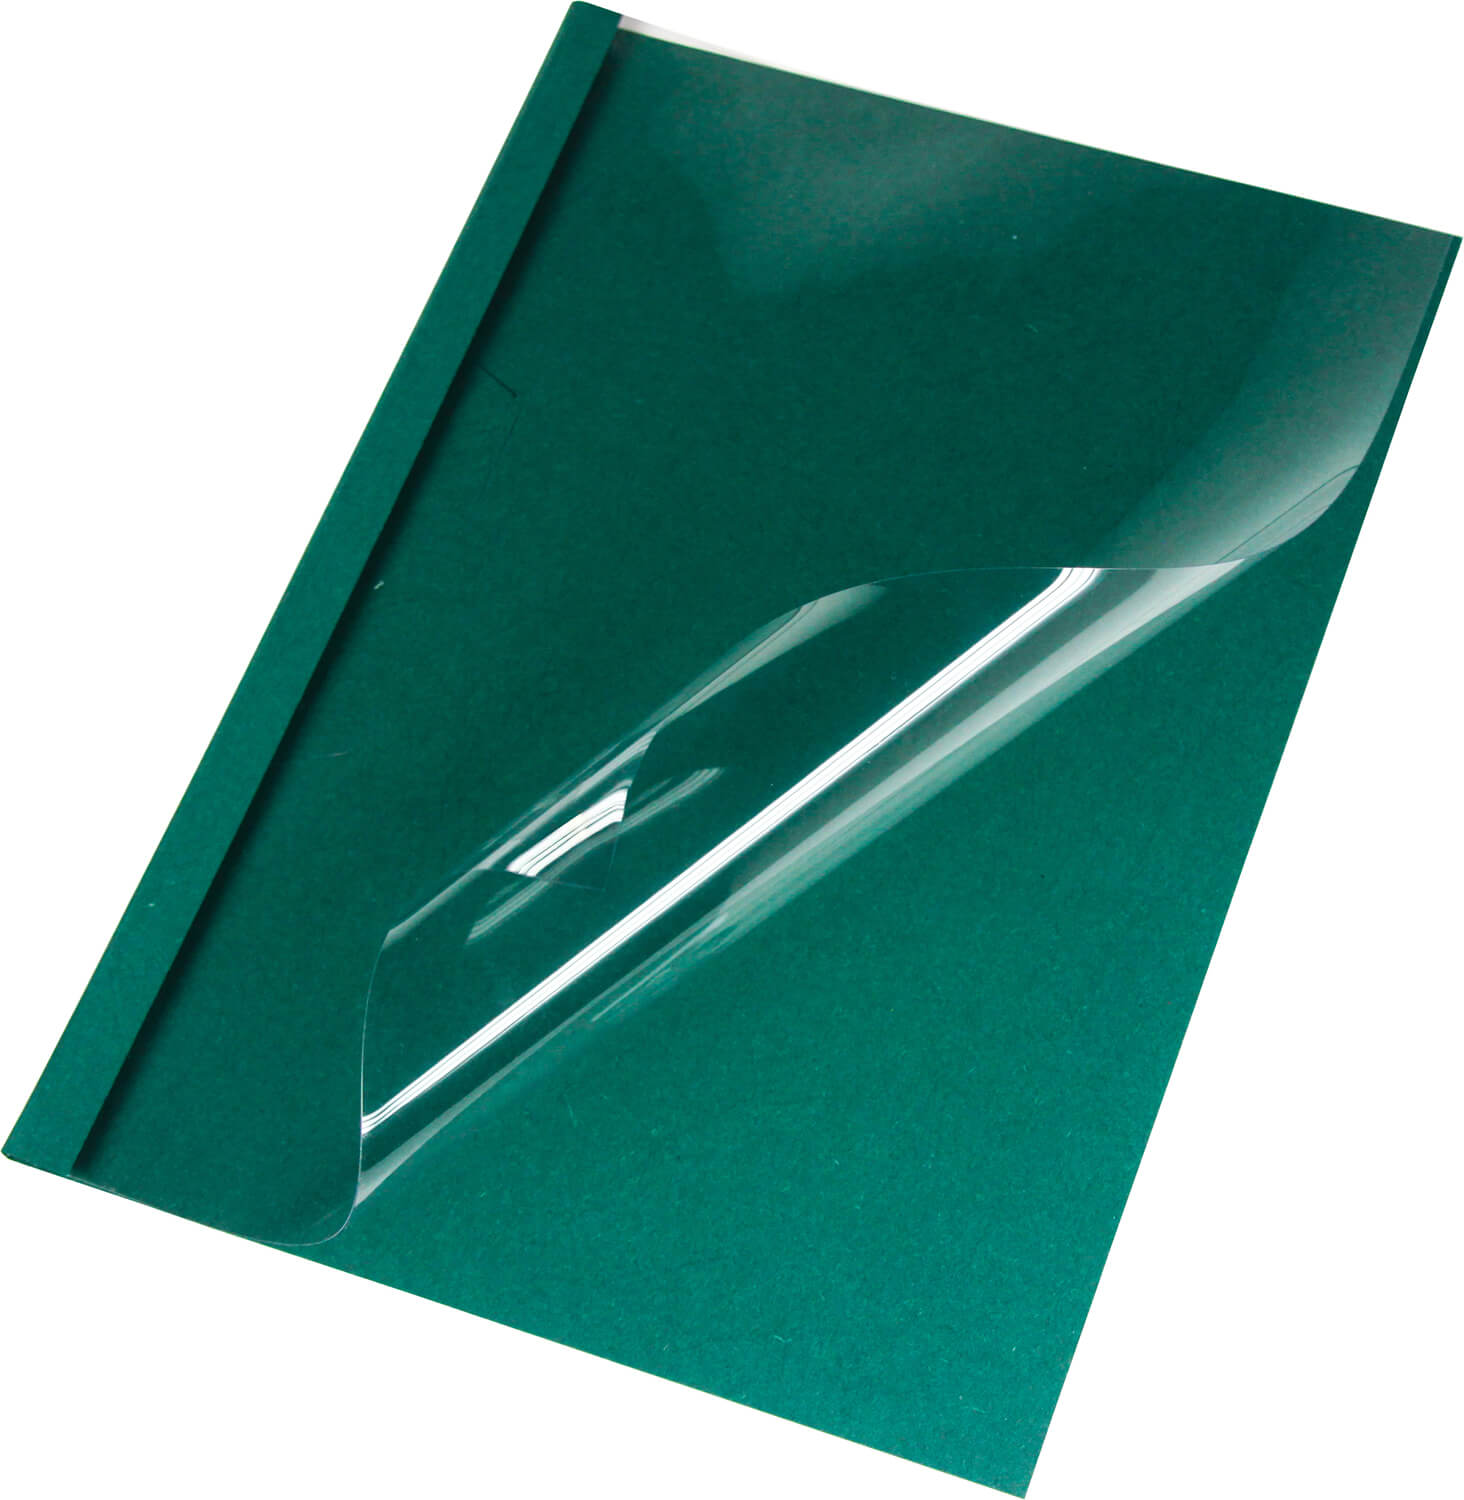 Thermobindemappen Leinen A4, grün 4 mm, matte Vorderseite | Bestnr. LMG-BMDLEM-GR-R4